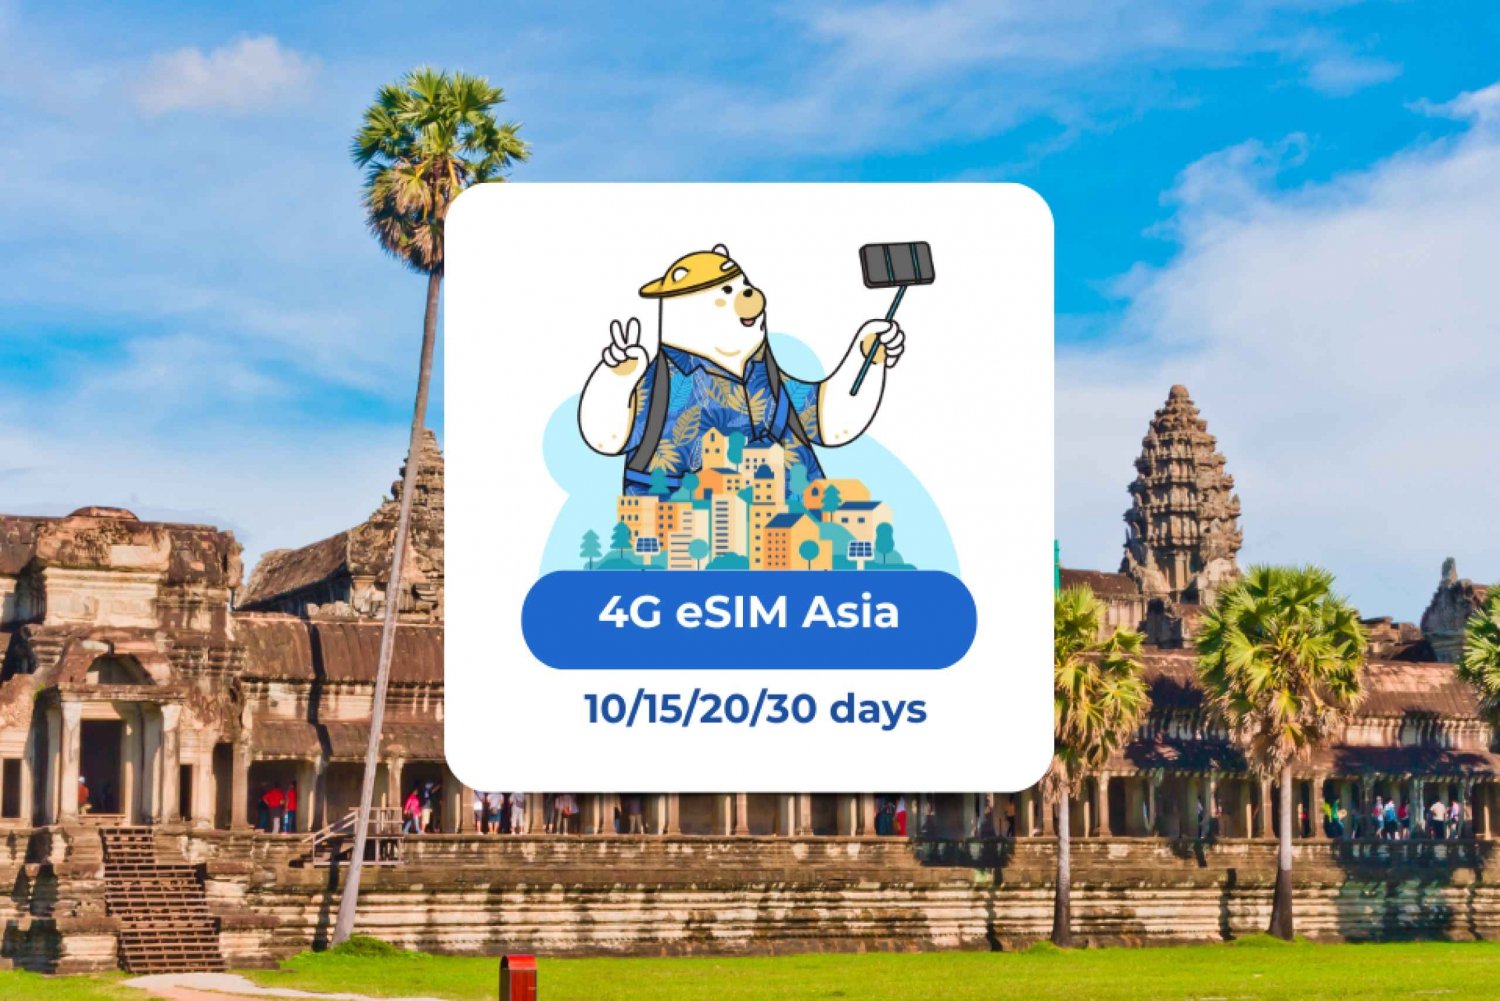 Asia: eSIM Mobile Data (8 countries) 10/15/20/30 days